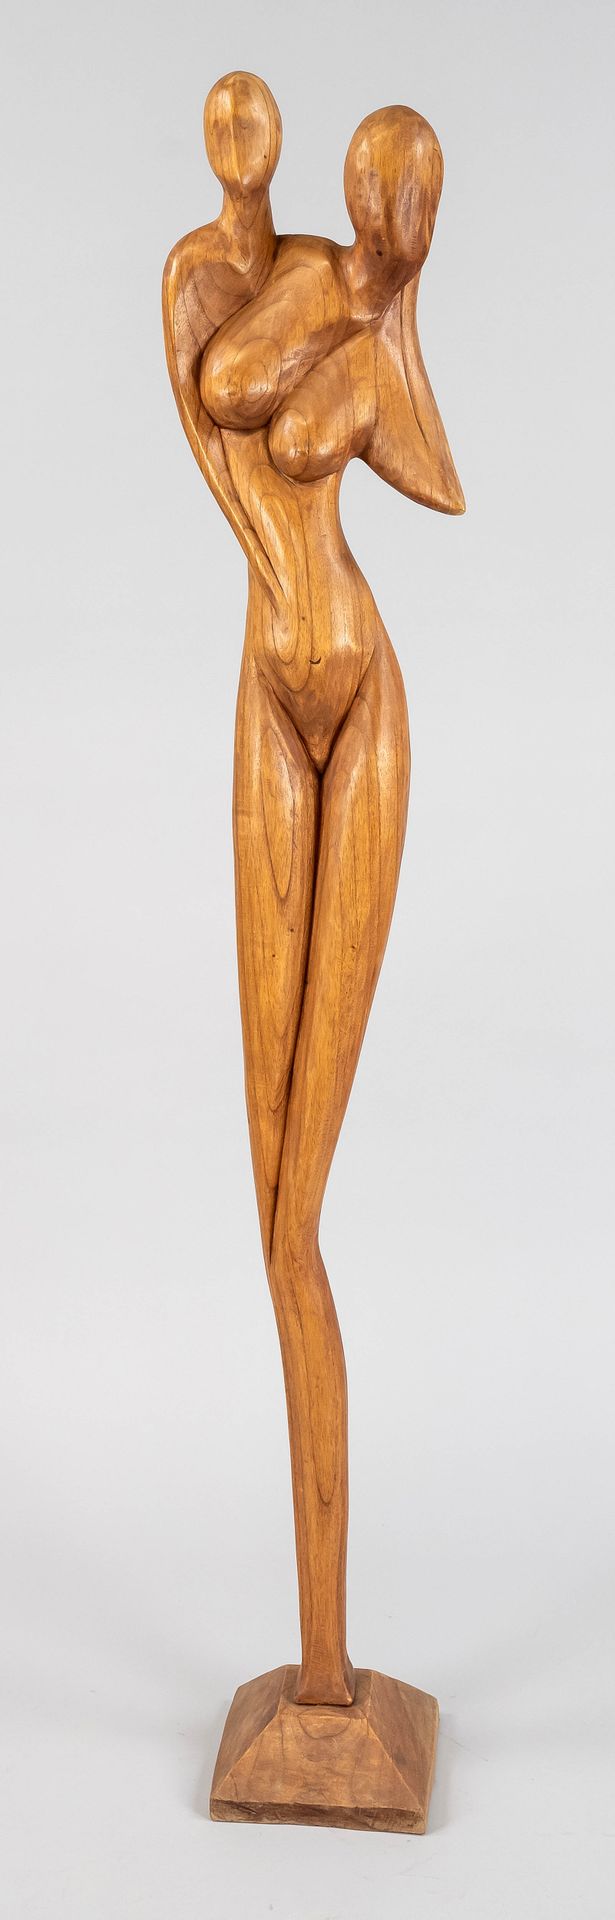 Null 匿名雕塑家 20世纪下半叶，大型抽象女性形象，由轻木制成，站在长方形基座上，没有签名，高155厘米